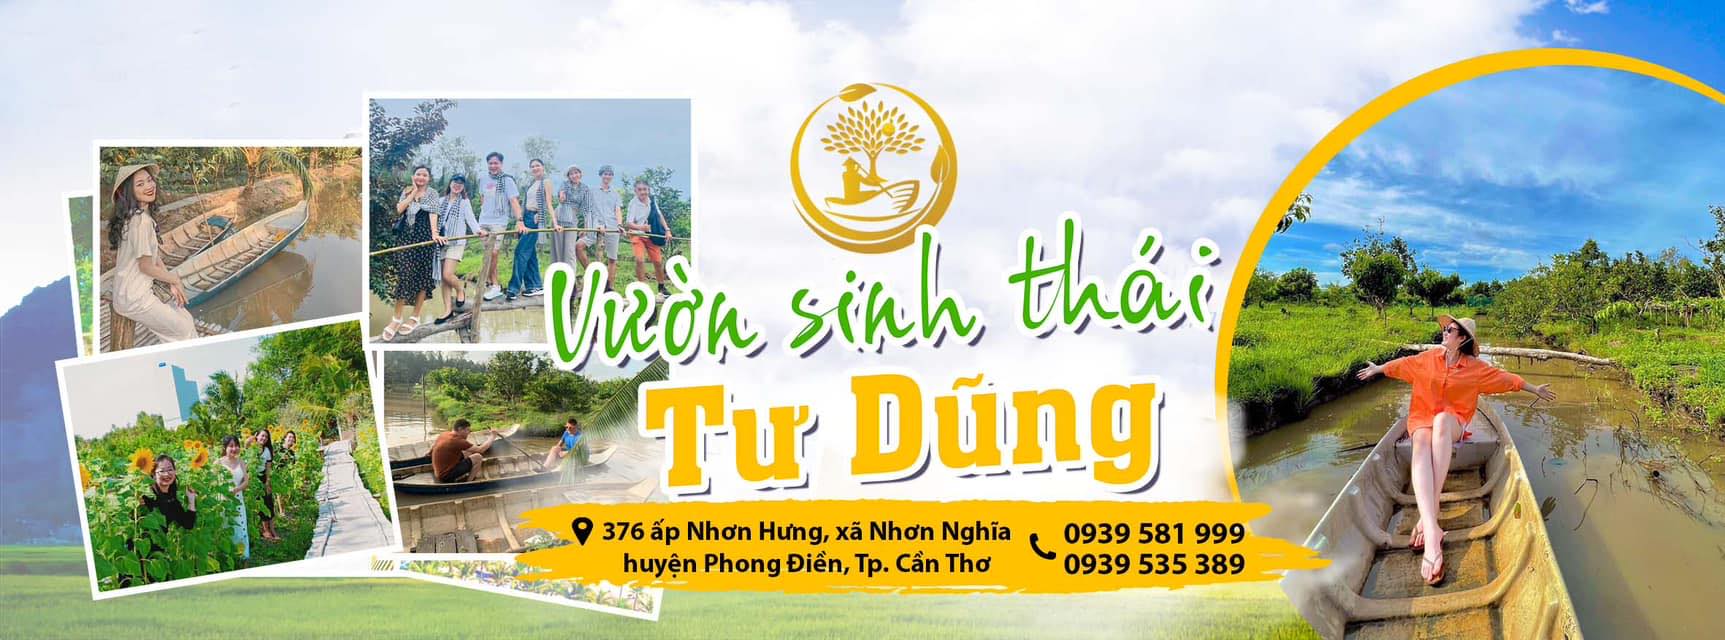 Huyện Phong Điền